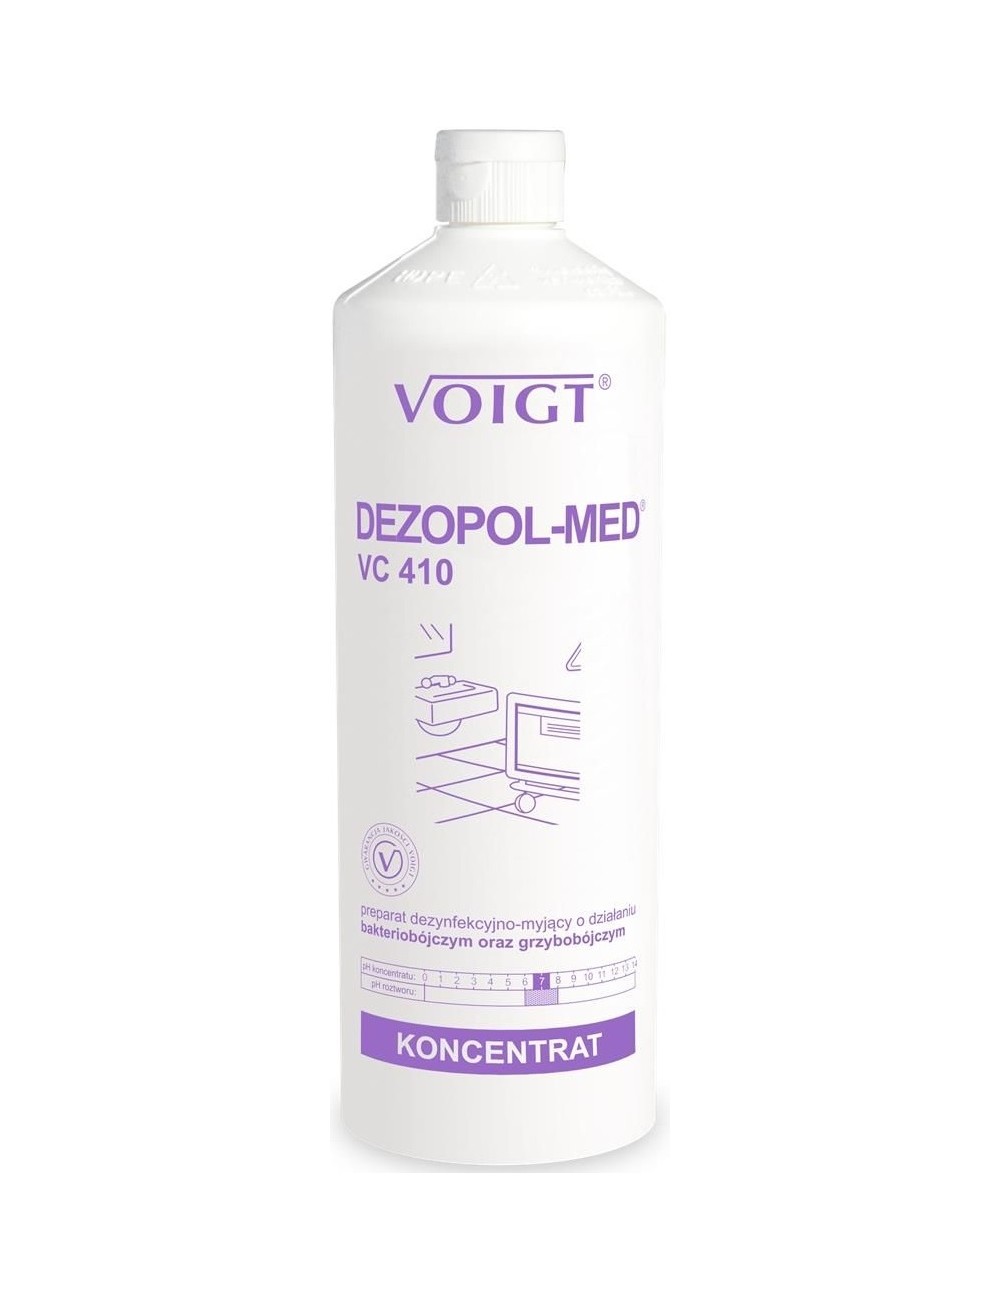 Voigt Dezopol-Med VC 410 Preparat Dezynfekcyjno-Myjący o Działaniu Bakteriobójczym i Grzybobójczym 1 L